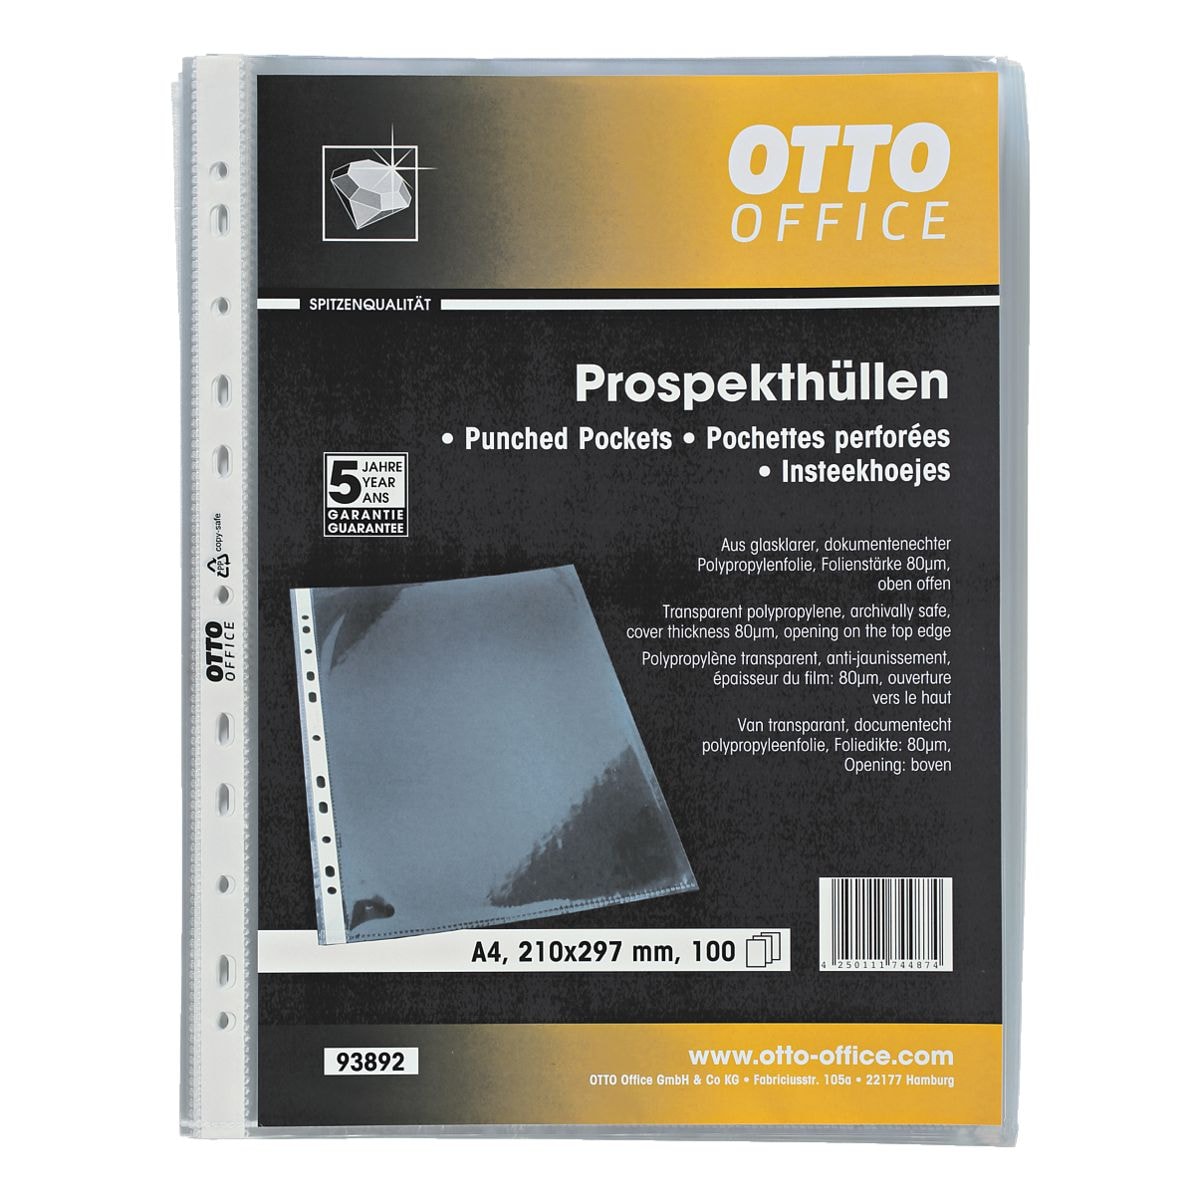 OTTO Office Premium Prospekthlle Premium A4 glasklar, oben offen - 100 Stck